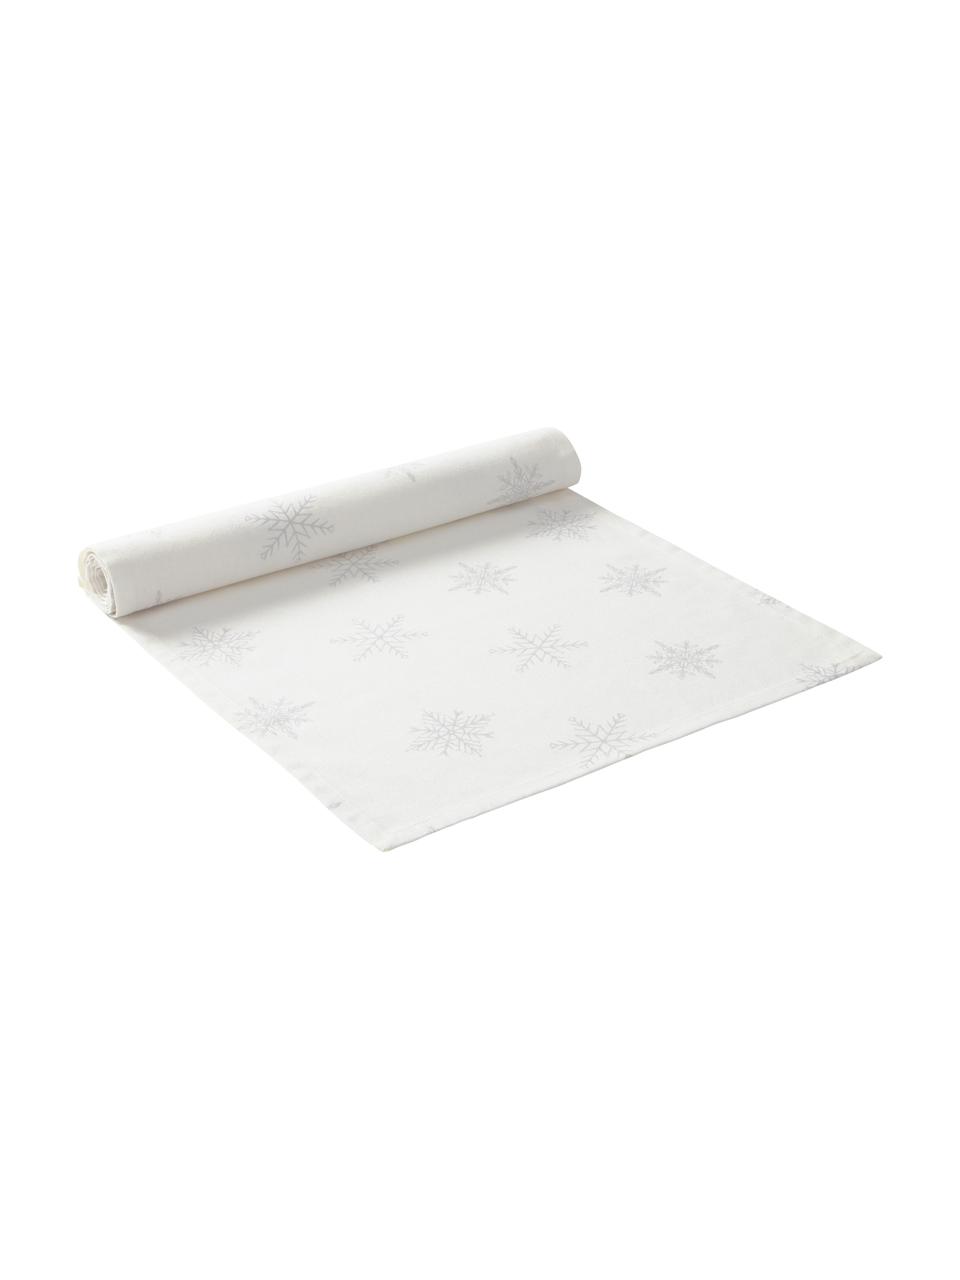 Chemin de table Snow, 100% coton, issu d'une culture durable de coton, Blanc crème, gris clair, 40 x 140 cm